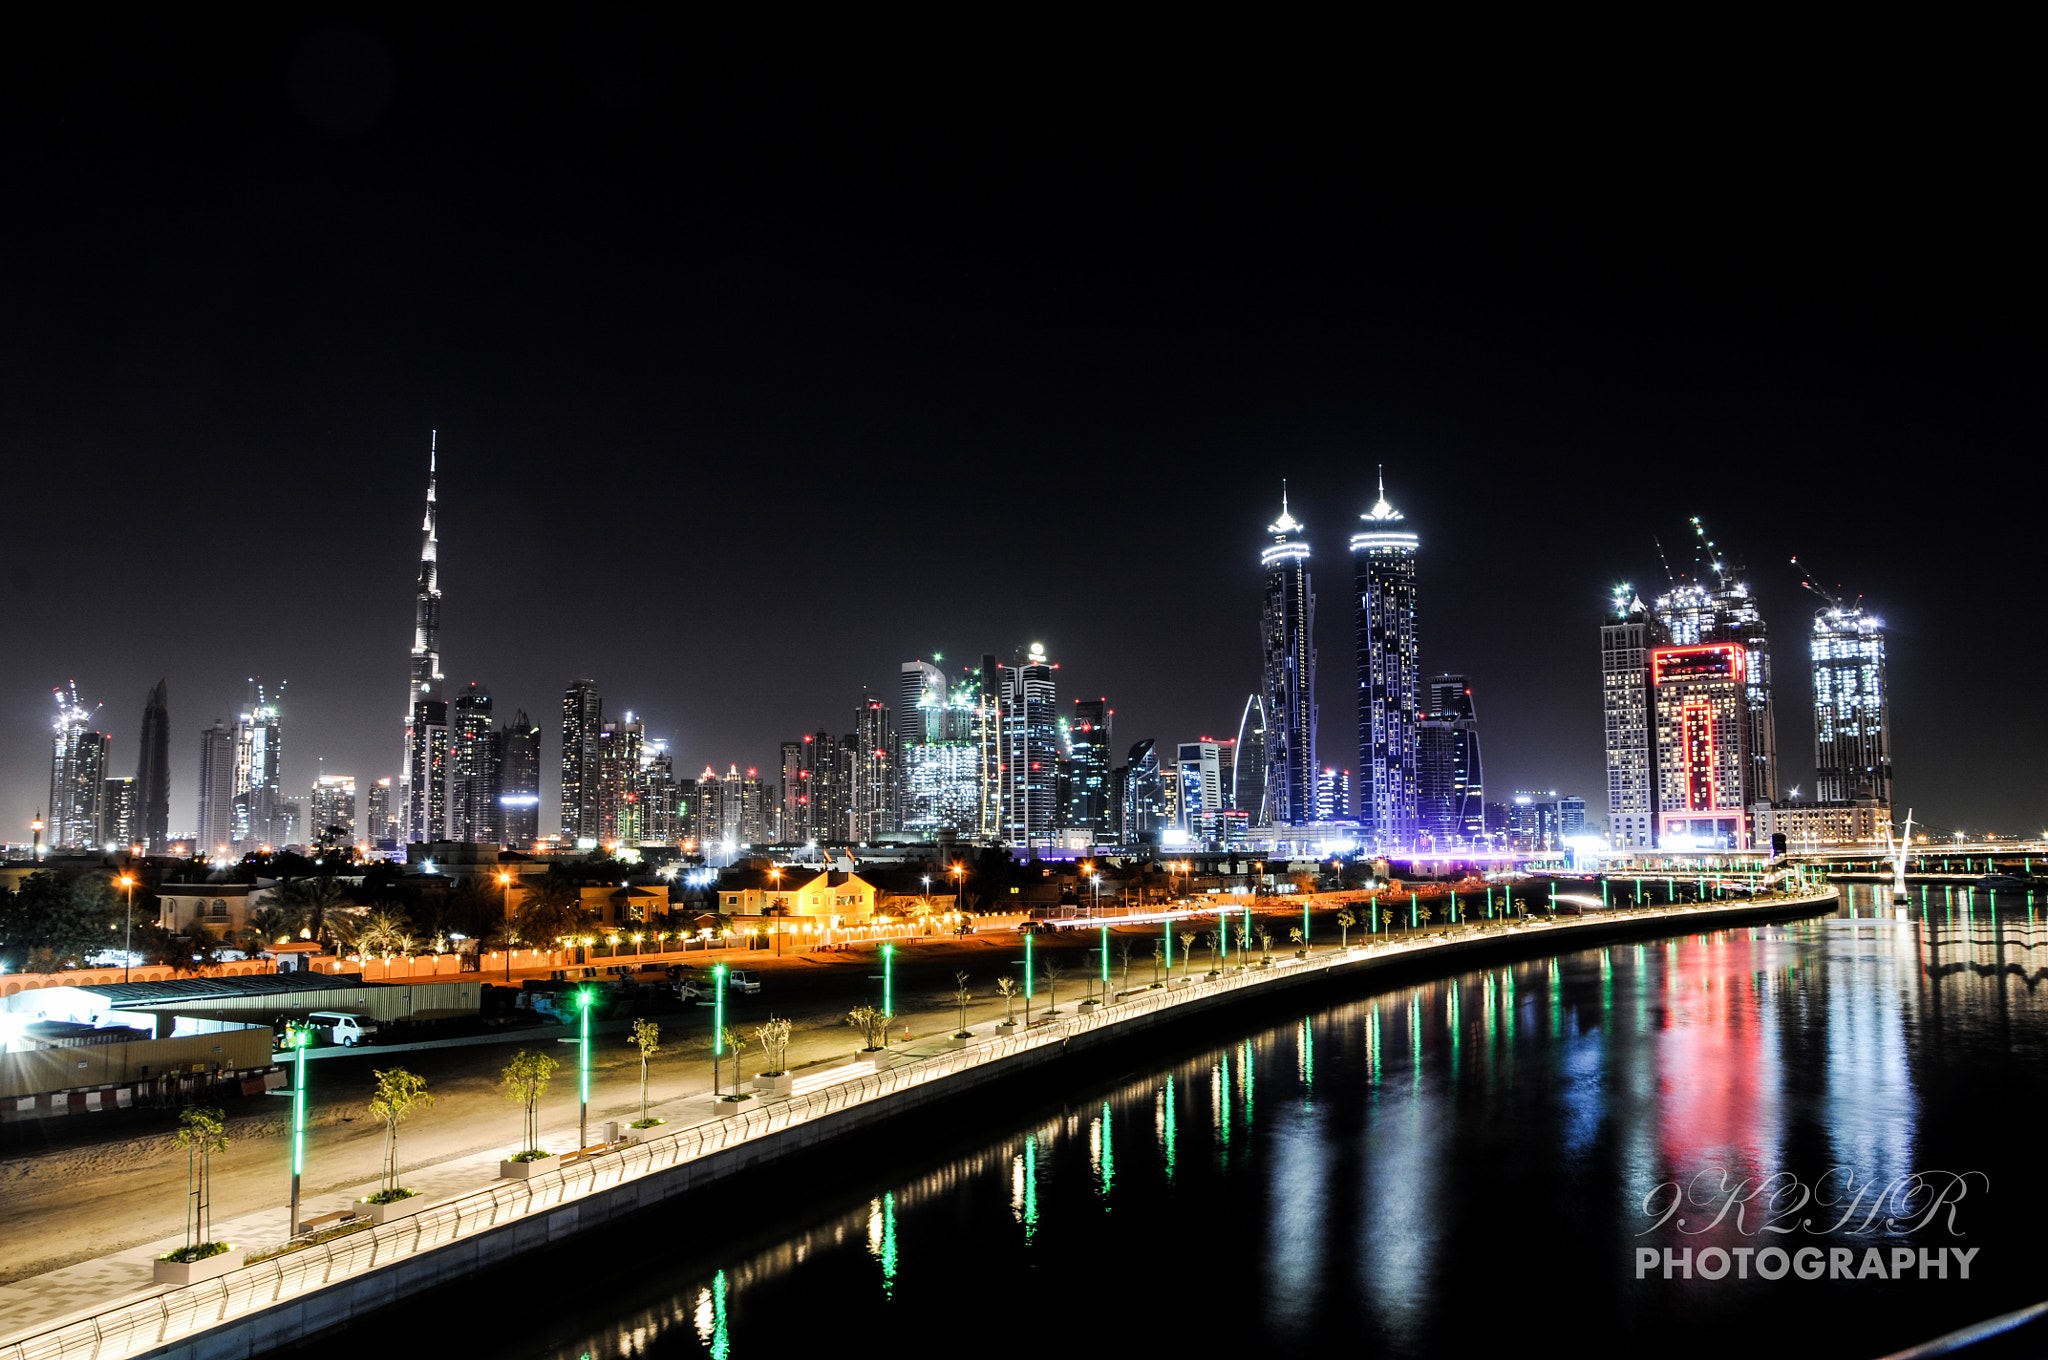 Nikon D300 + Nikon AF-S DX Nikkor 18-105mm F3.5-5.6G ED VR sample photo. Dubai night lights photography